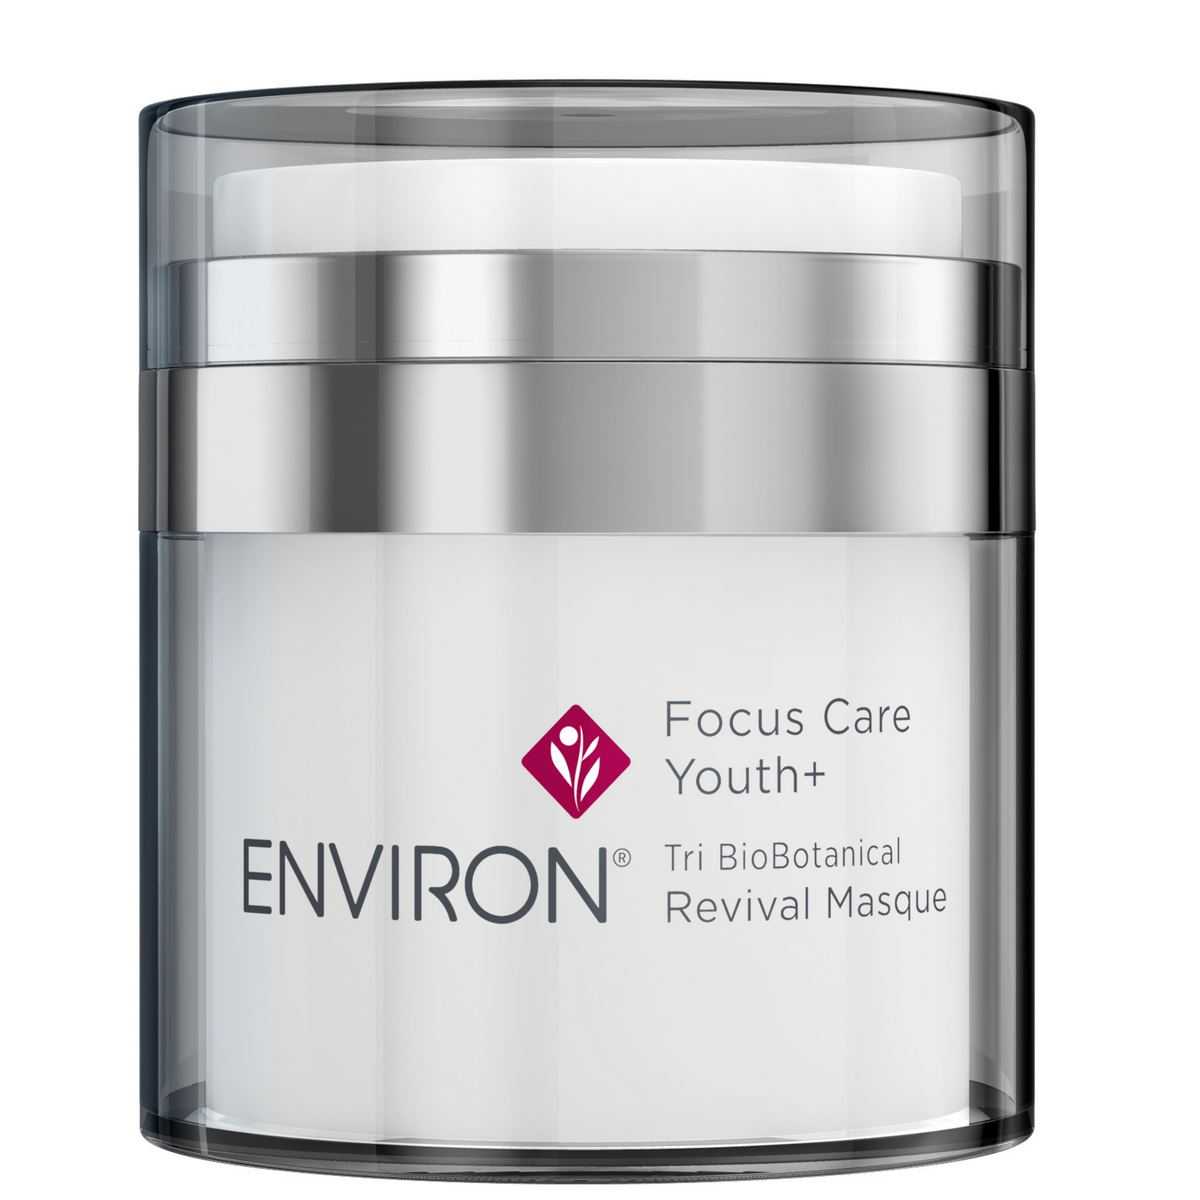 Environ - Tri Bio-Botanical Revival Masque (50 ml) - Sarah Akram Skincare